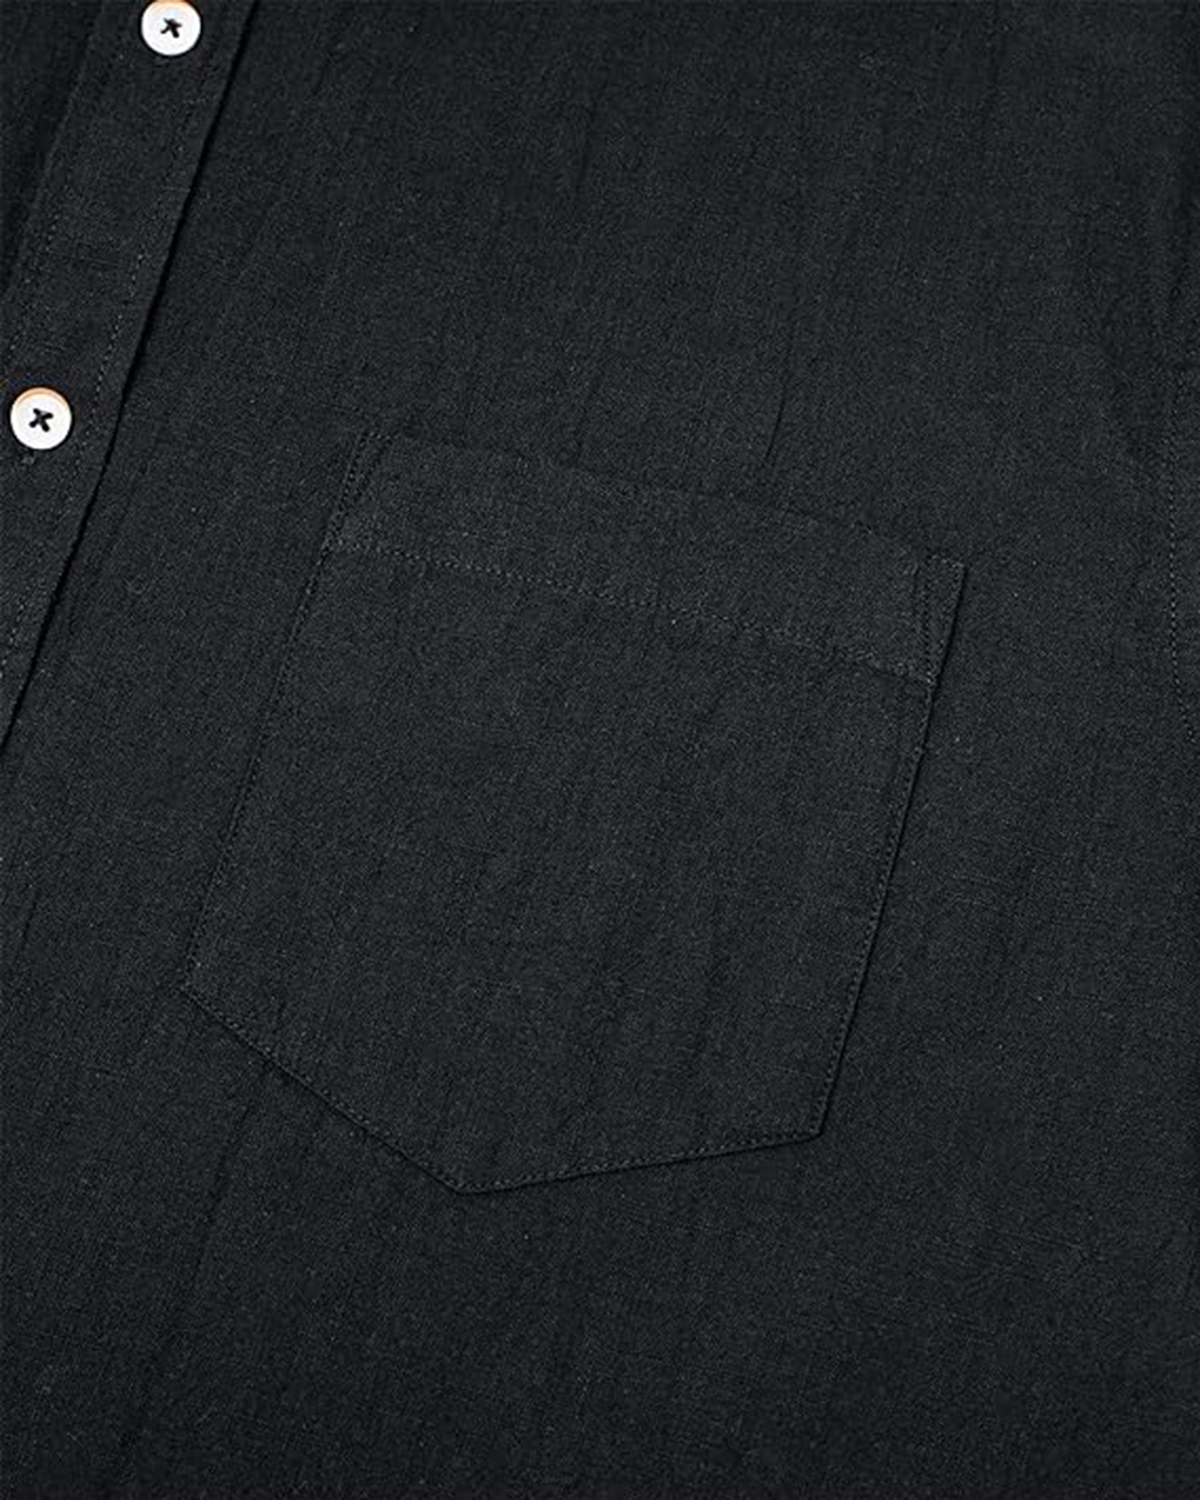 men-short-sleeve-black-cotton-and-linen-blend-shirt-4